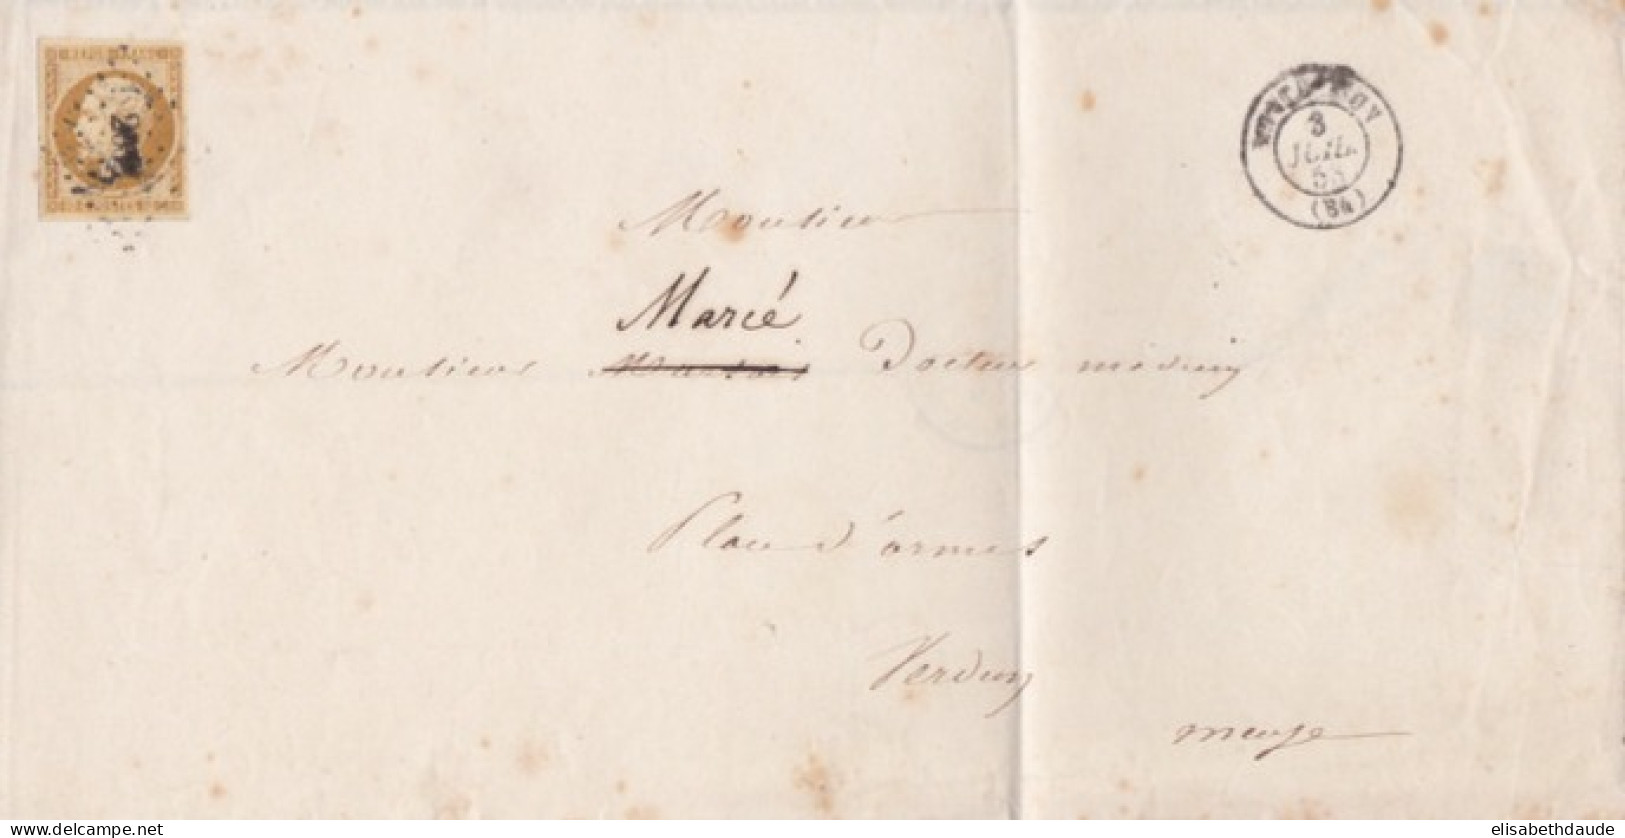 1853 - PRESIDENCE - YVERT N°9 SEUL SUR LETTRE COMPLETE (TARIF RARE) ! De MONTBRISON (LOIRE) => VERDUN - 1852 Louis-Napoleon